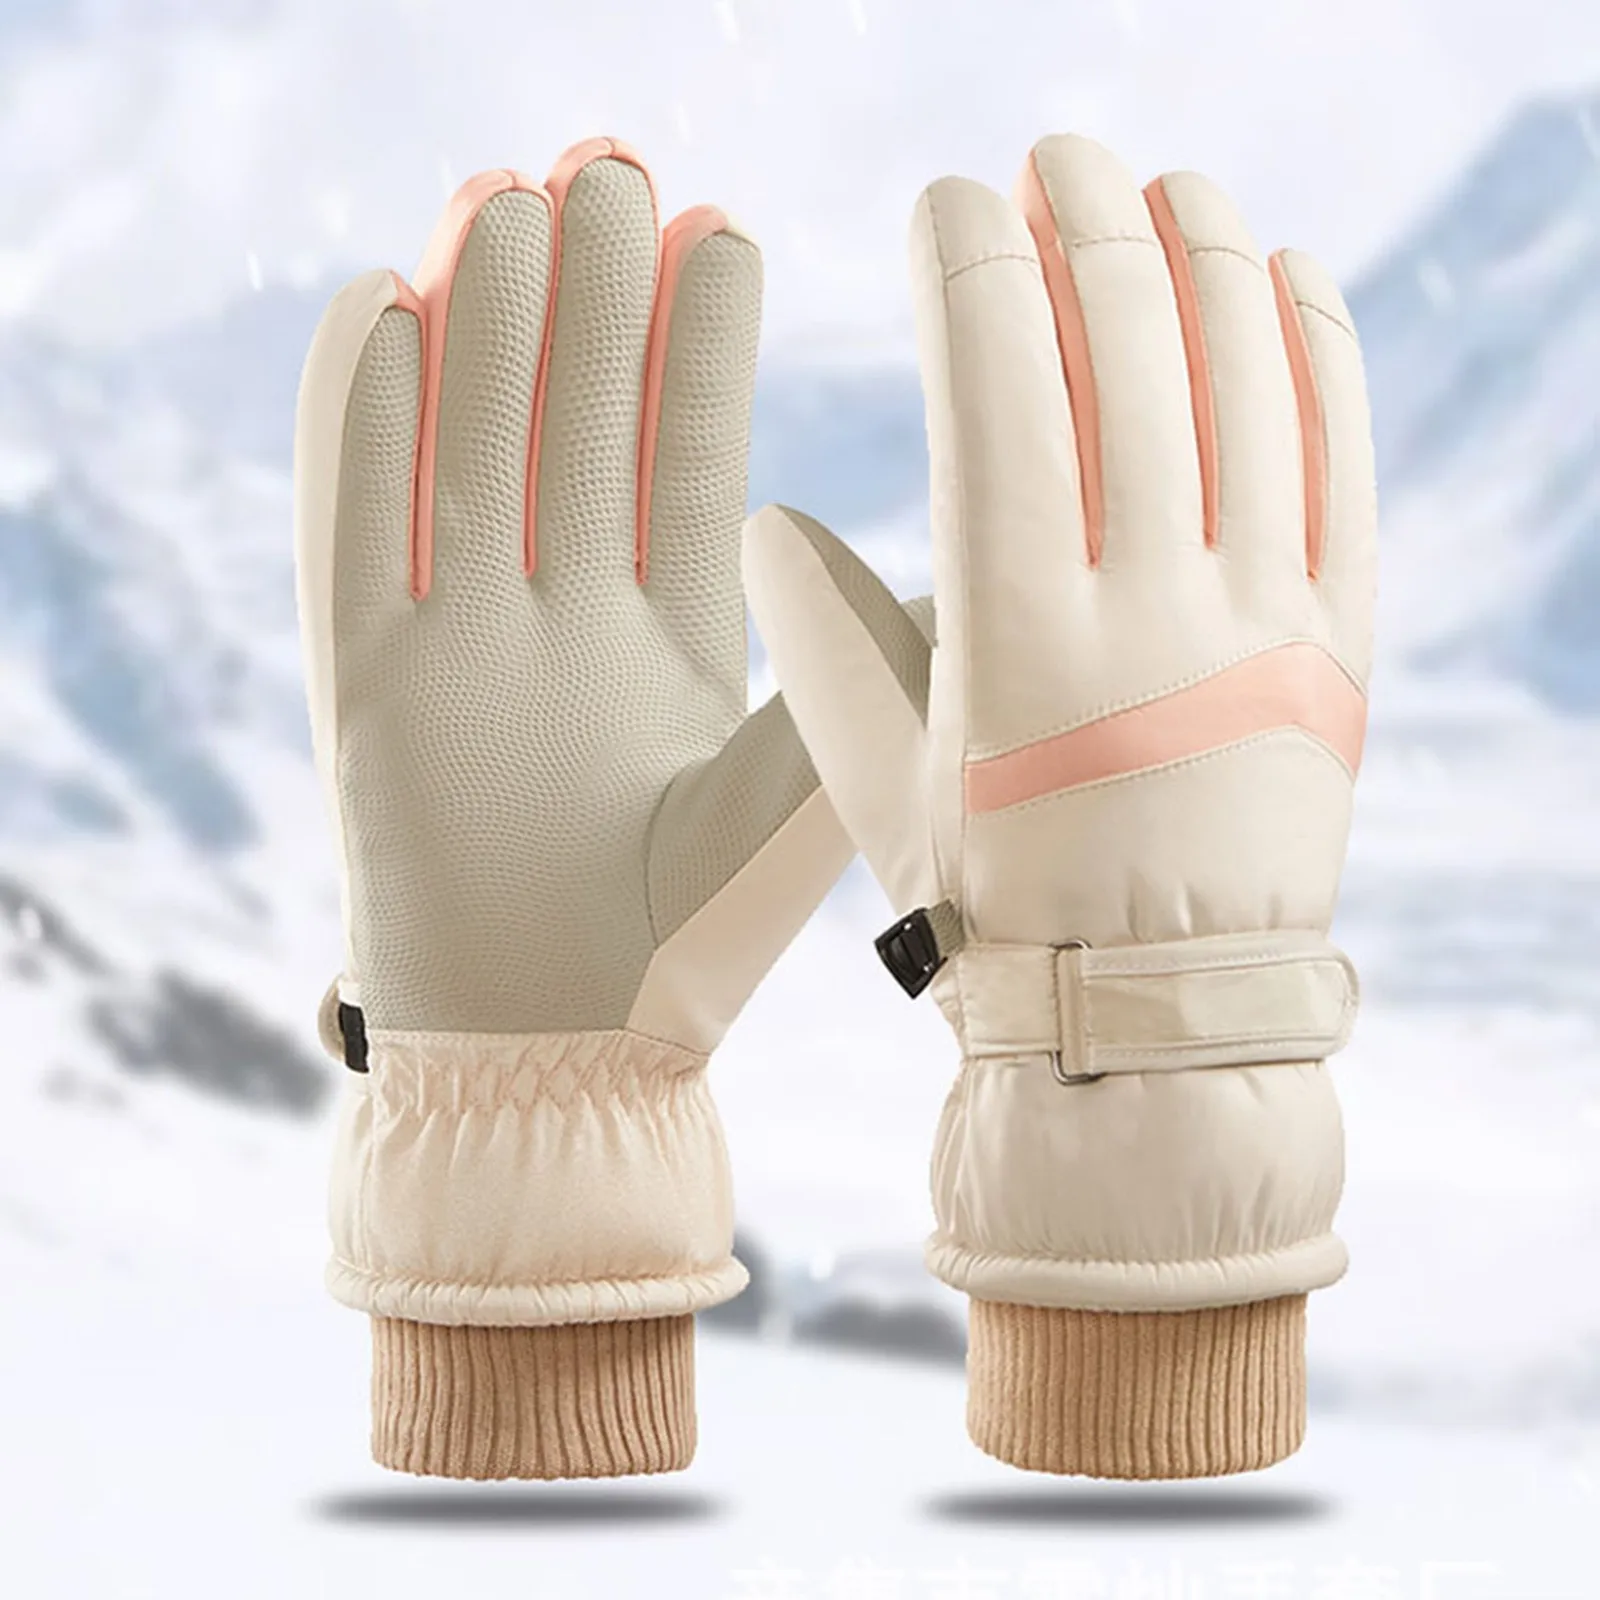 

Зимние кожаные перчатки премиум-класса для работы и горнолыжного спорта кожаные варежки водонепроницаемые мужские женские мотоциклетные зимние аксессуары